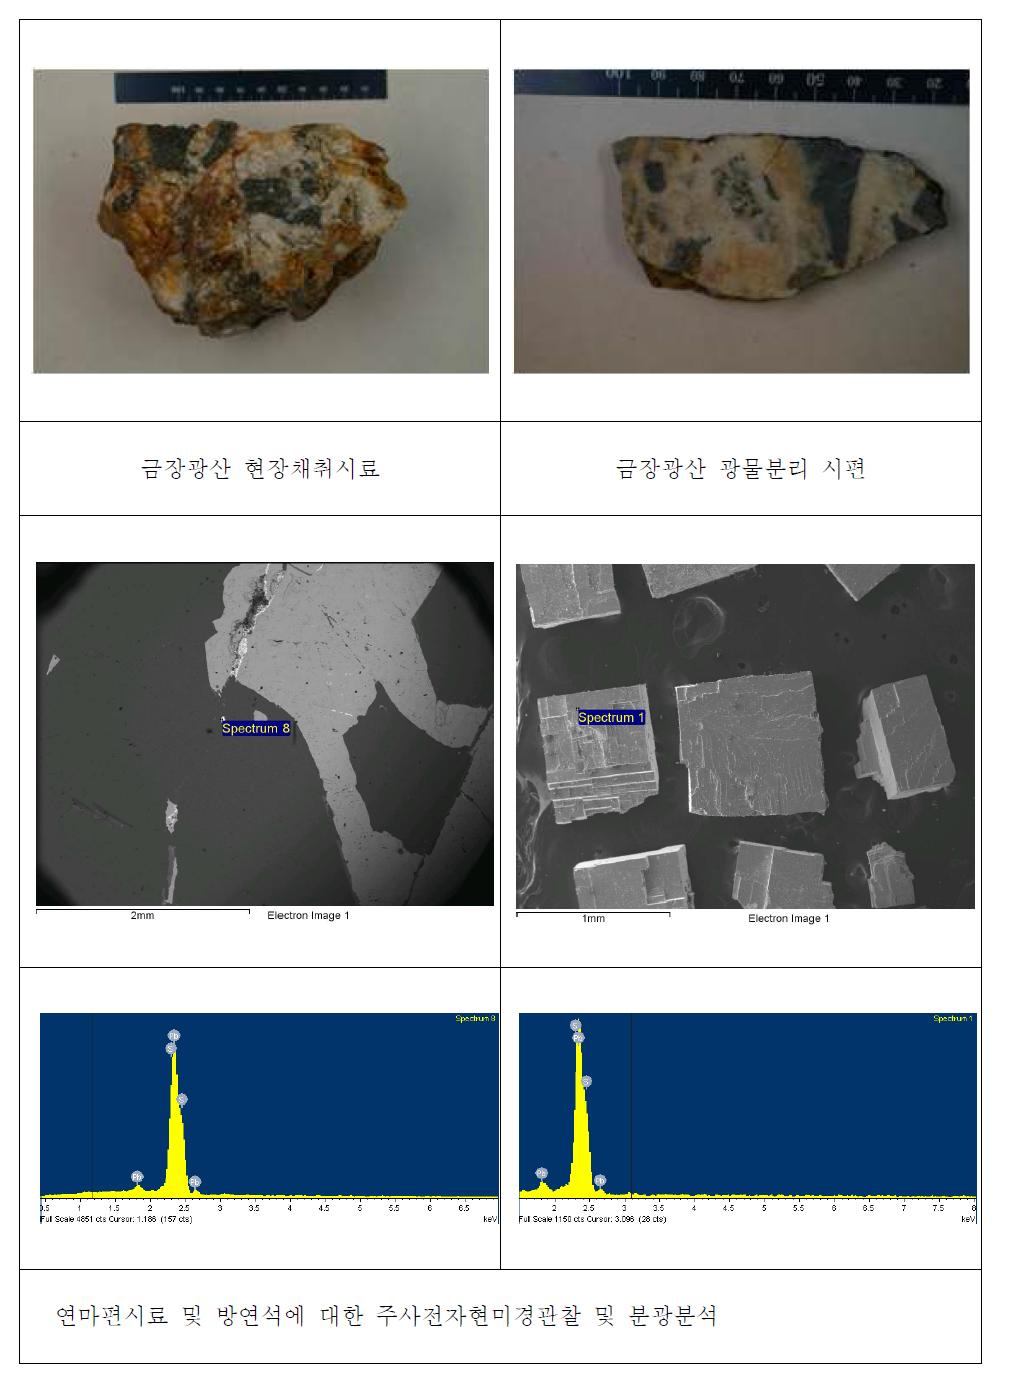 금장광산 연마편시료 및 방연석시료의 주사전자현미경관찰 및 분광분석